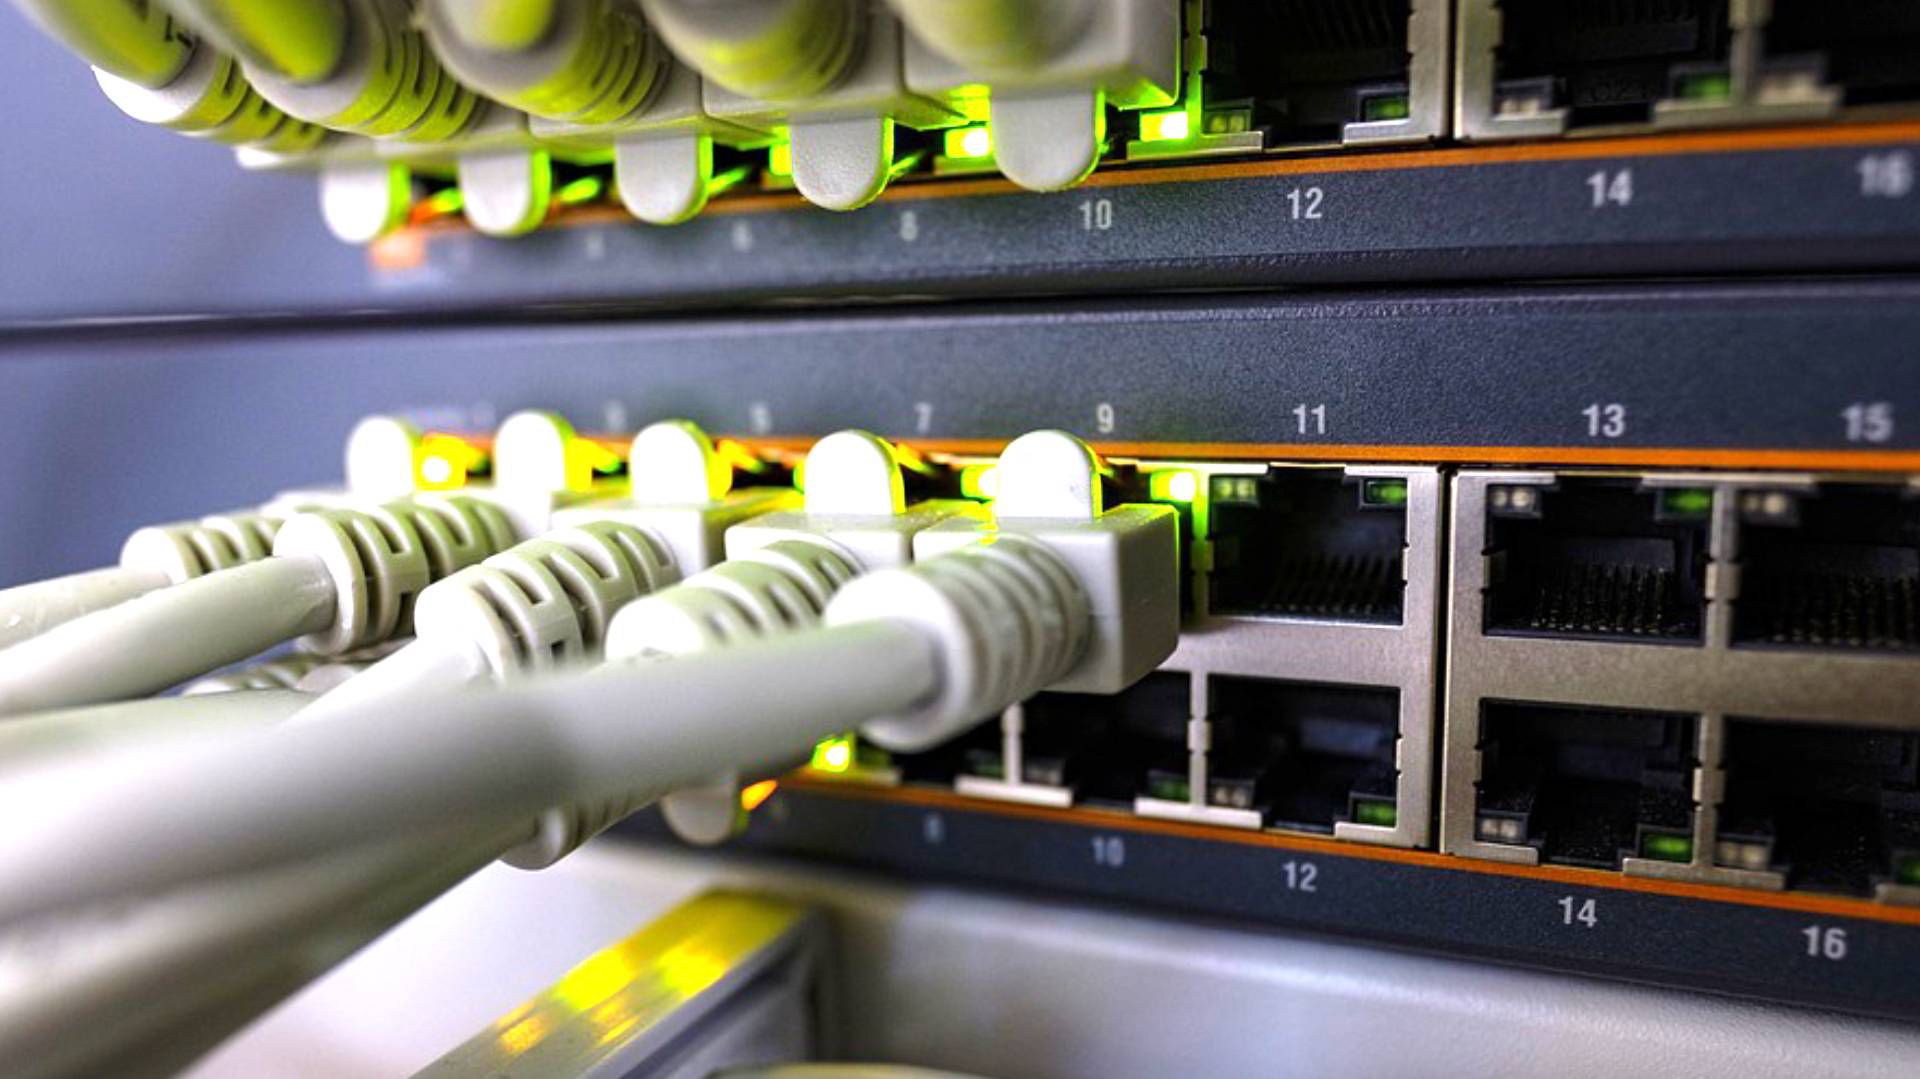 Es mejor que tu router, además de ser WiFi, cuente con algunos puertos Ethernet para conectar dispositivos directamente con un cable (Foto: Pixabay)